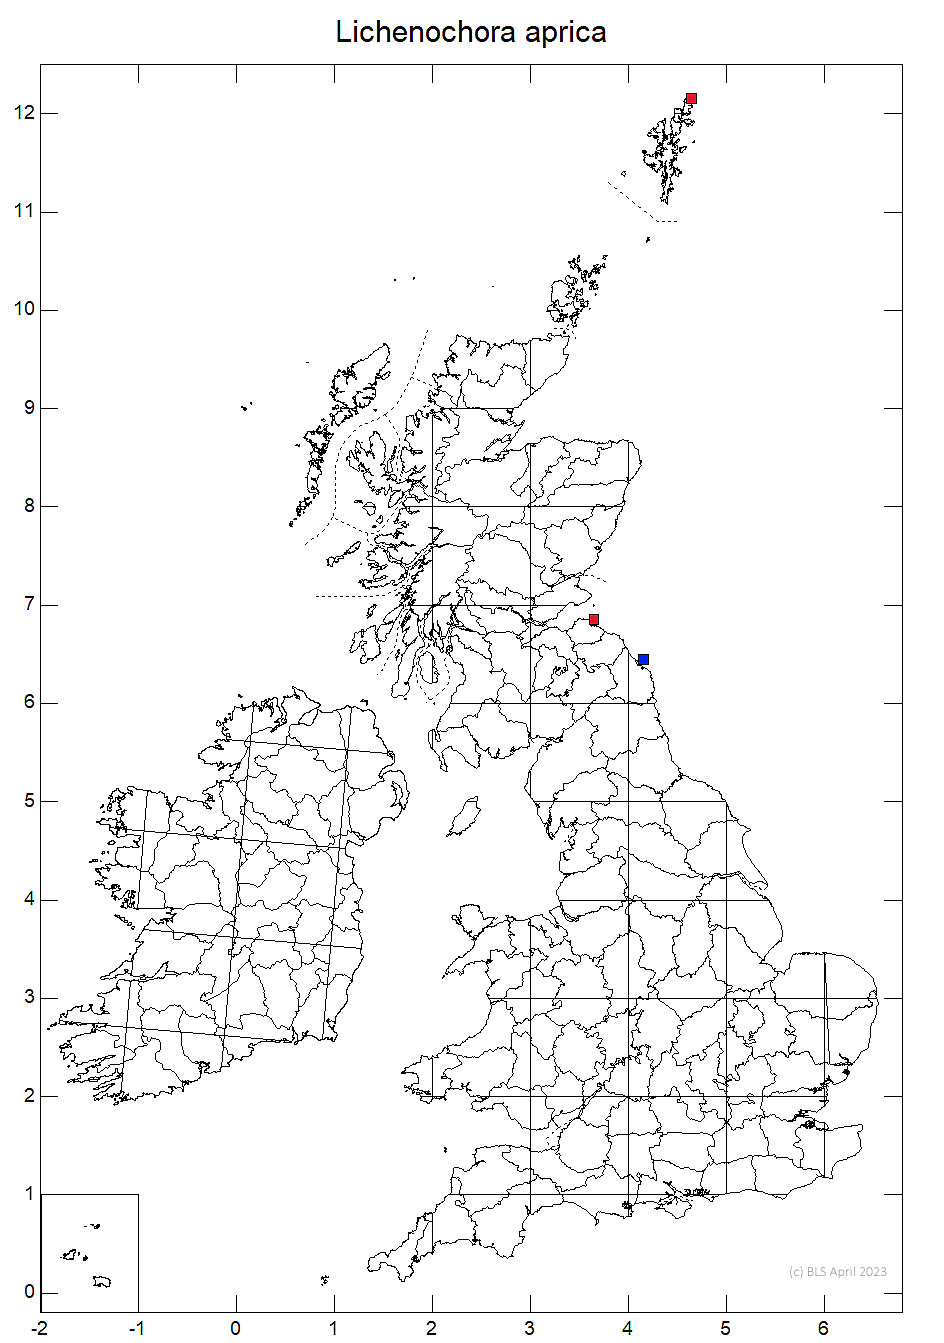 Lichenochora aprica 10km sq distribution map